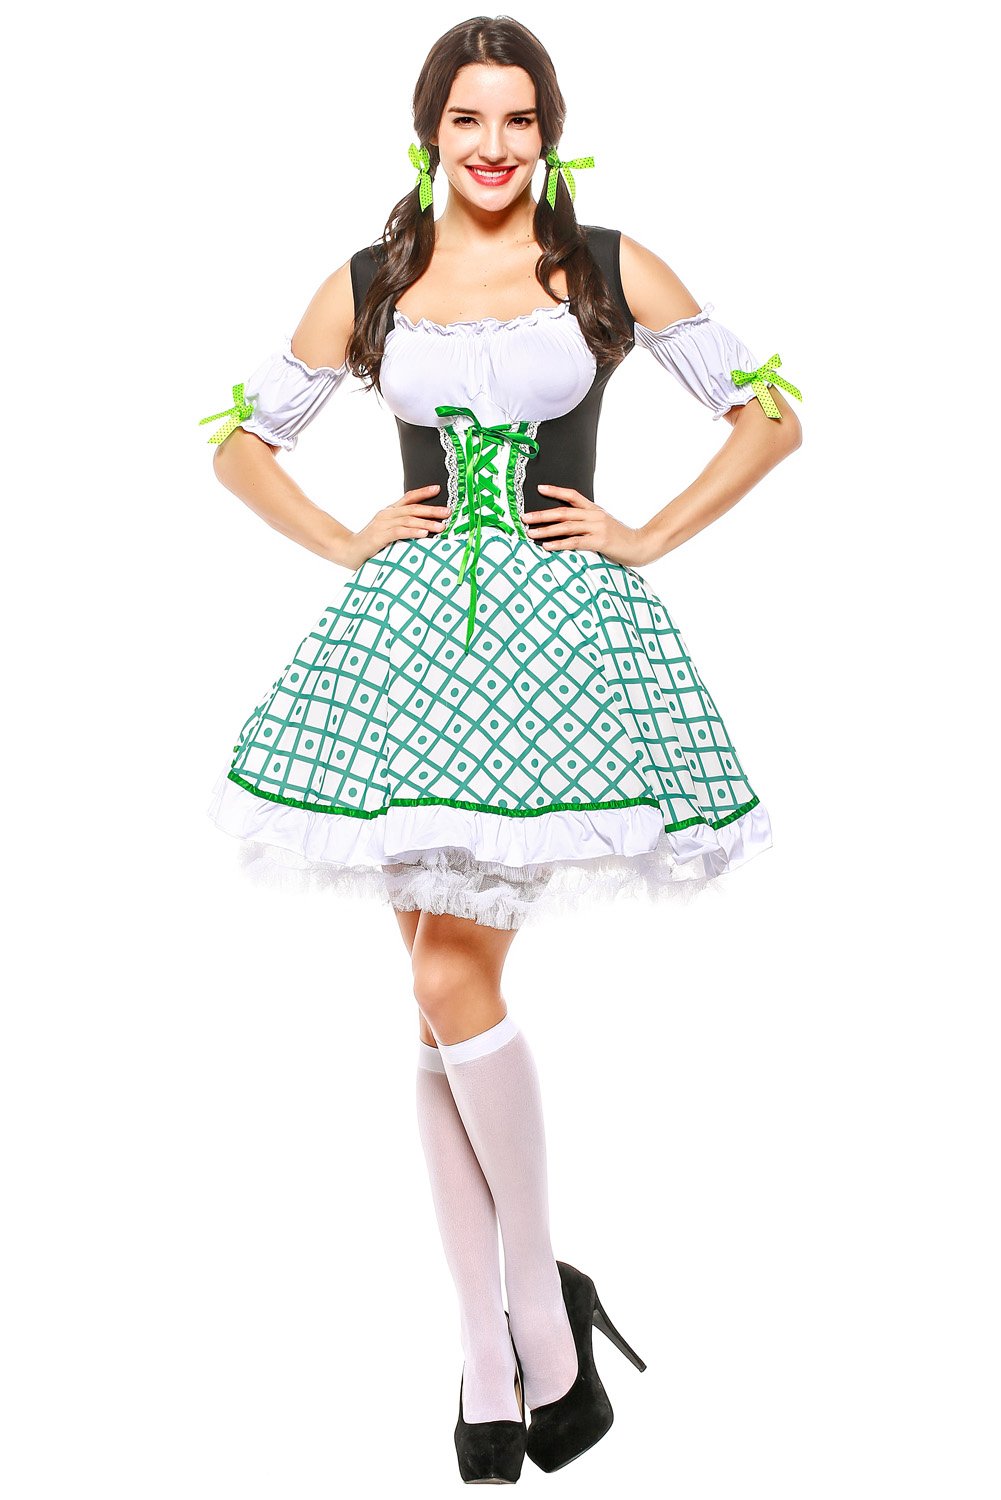 Damen Dirndl Trachtenkleid für Oktoberfest Mottoparty Karneval Kostüm